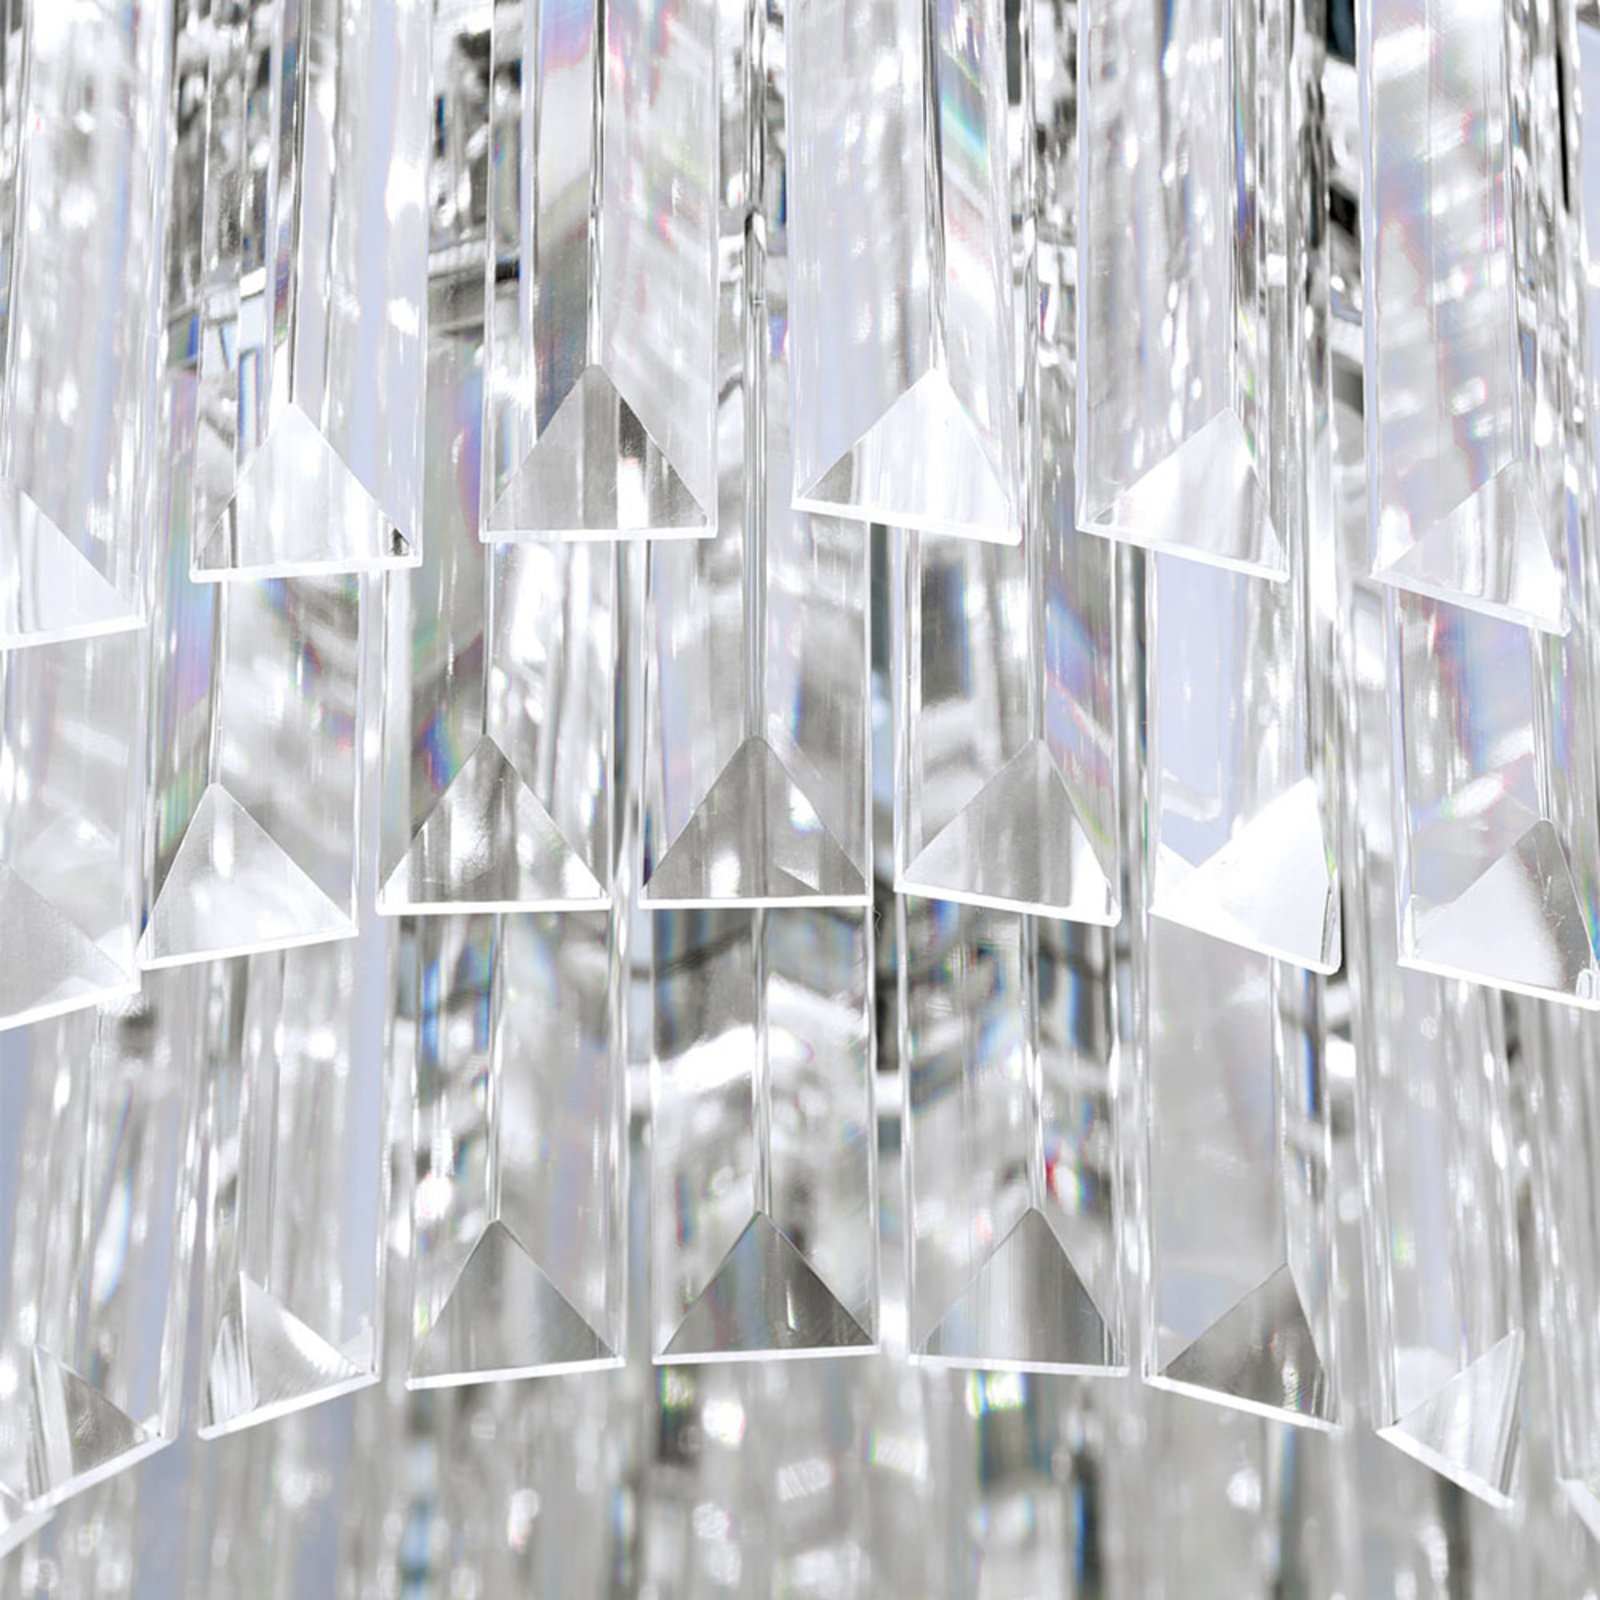 Stropné LED svietidlo Prism, chróm, Ø 35 cm